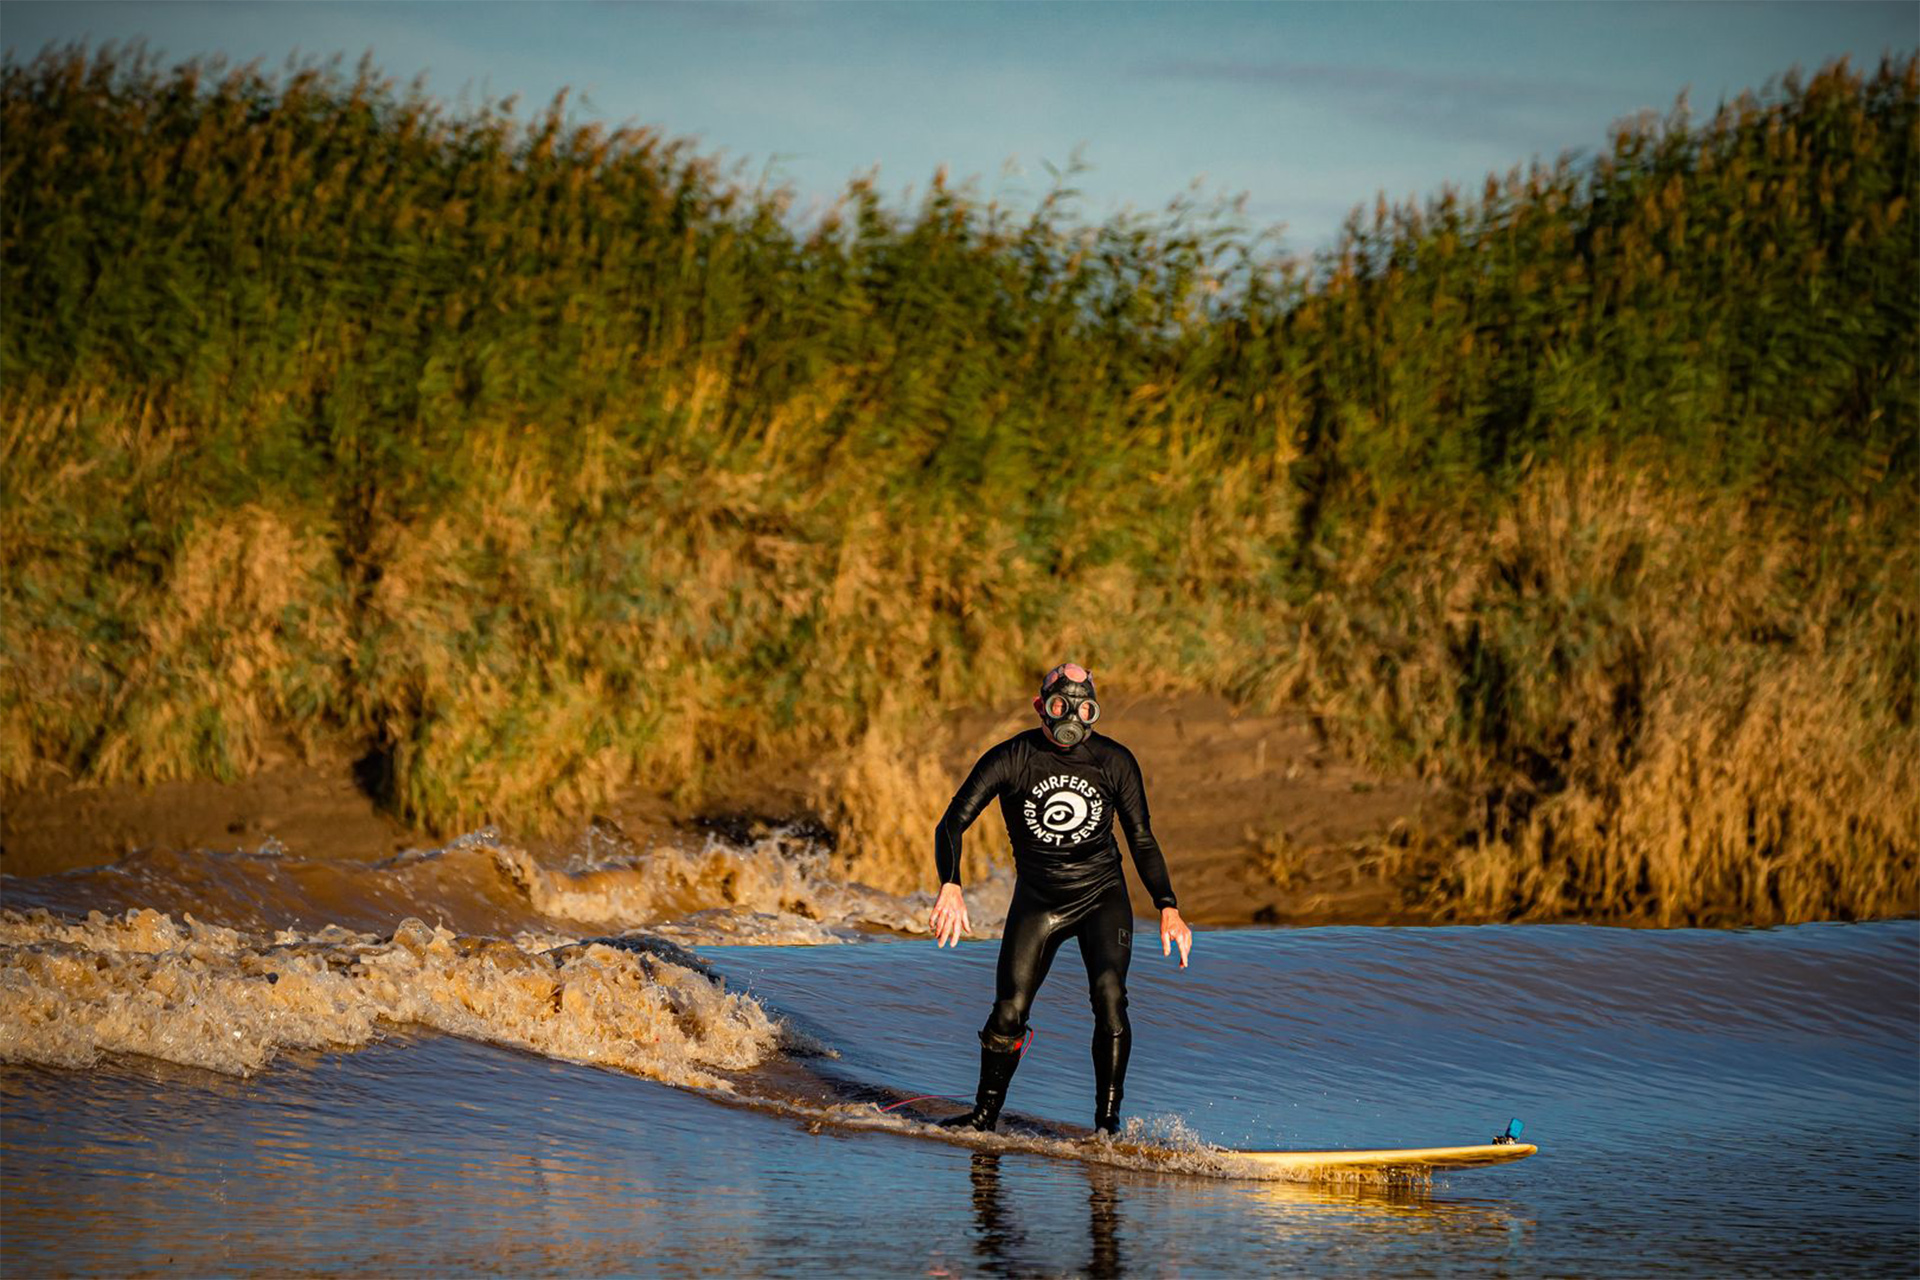 Qual o impacto ambiental causado pelo surf?